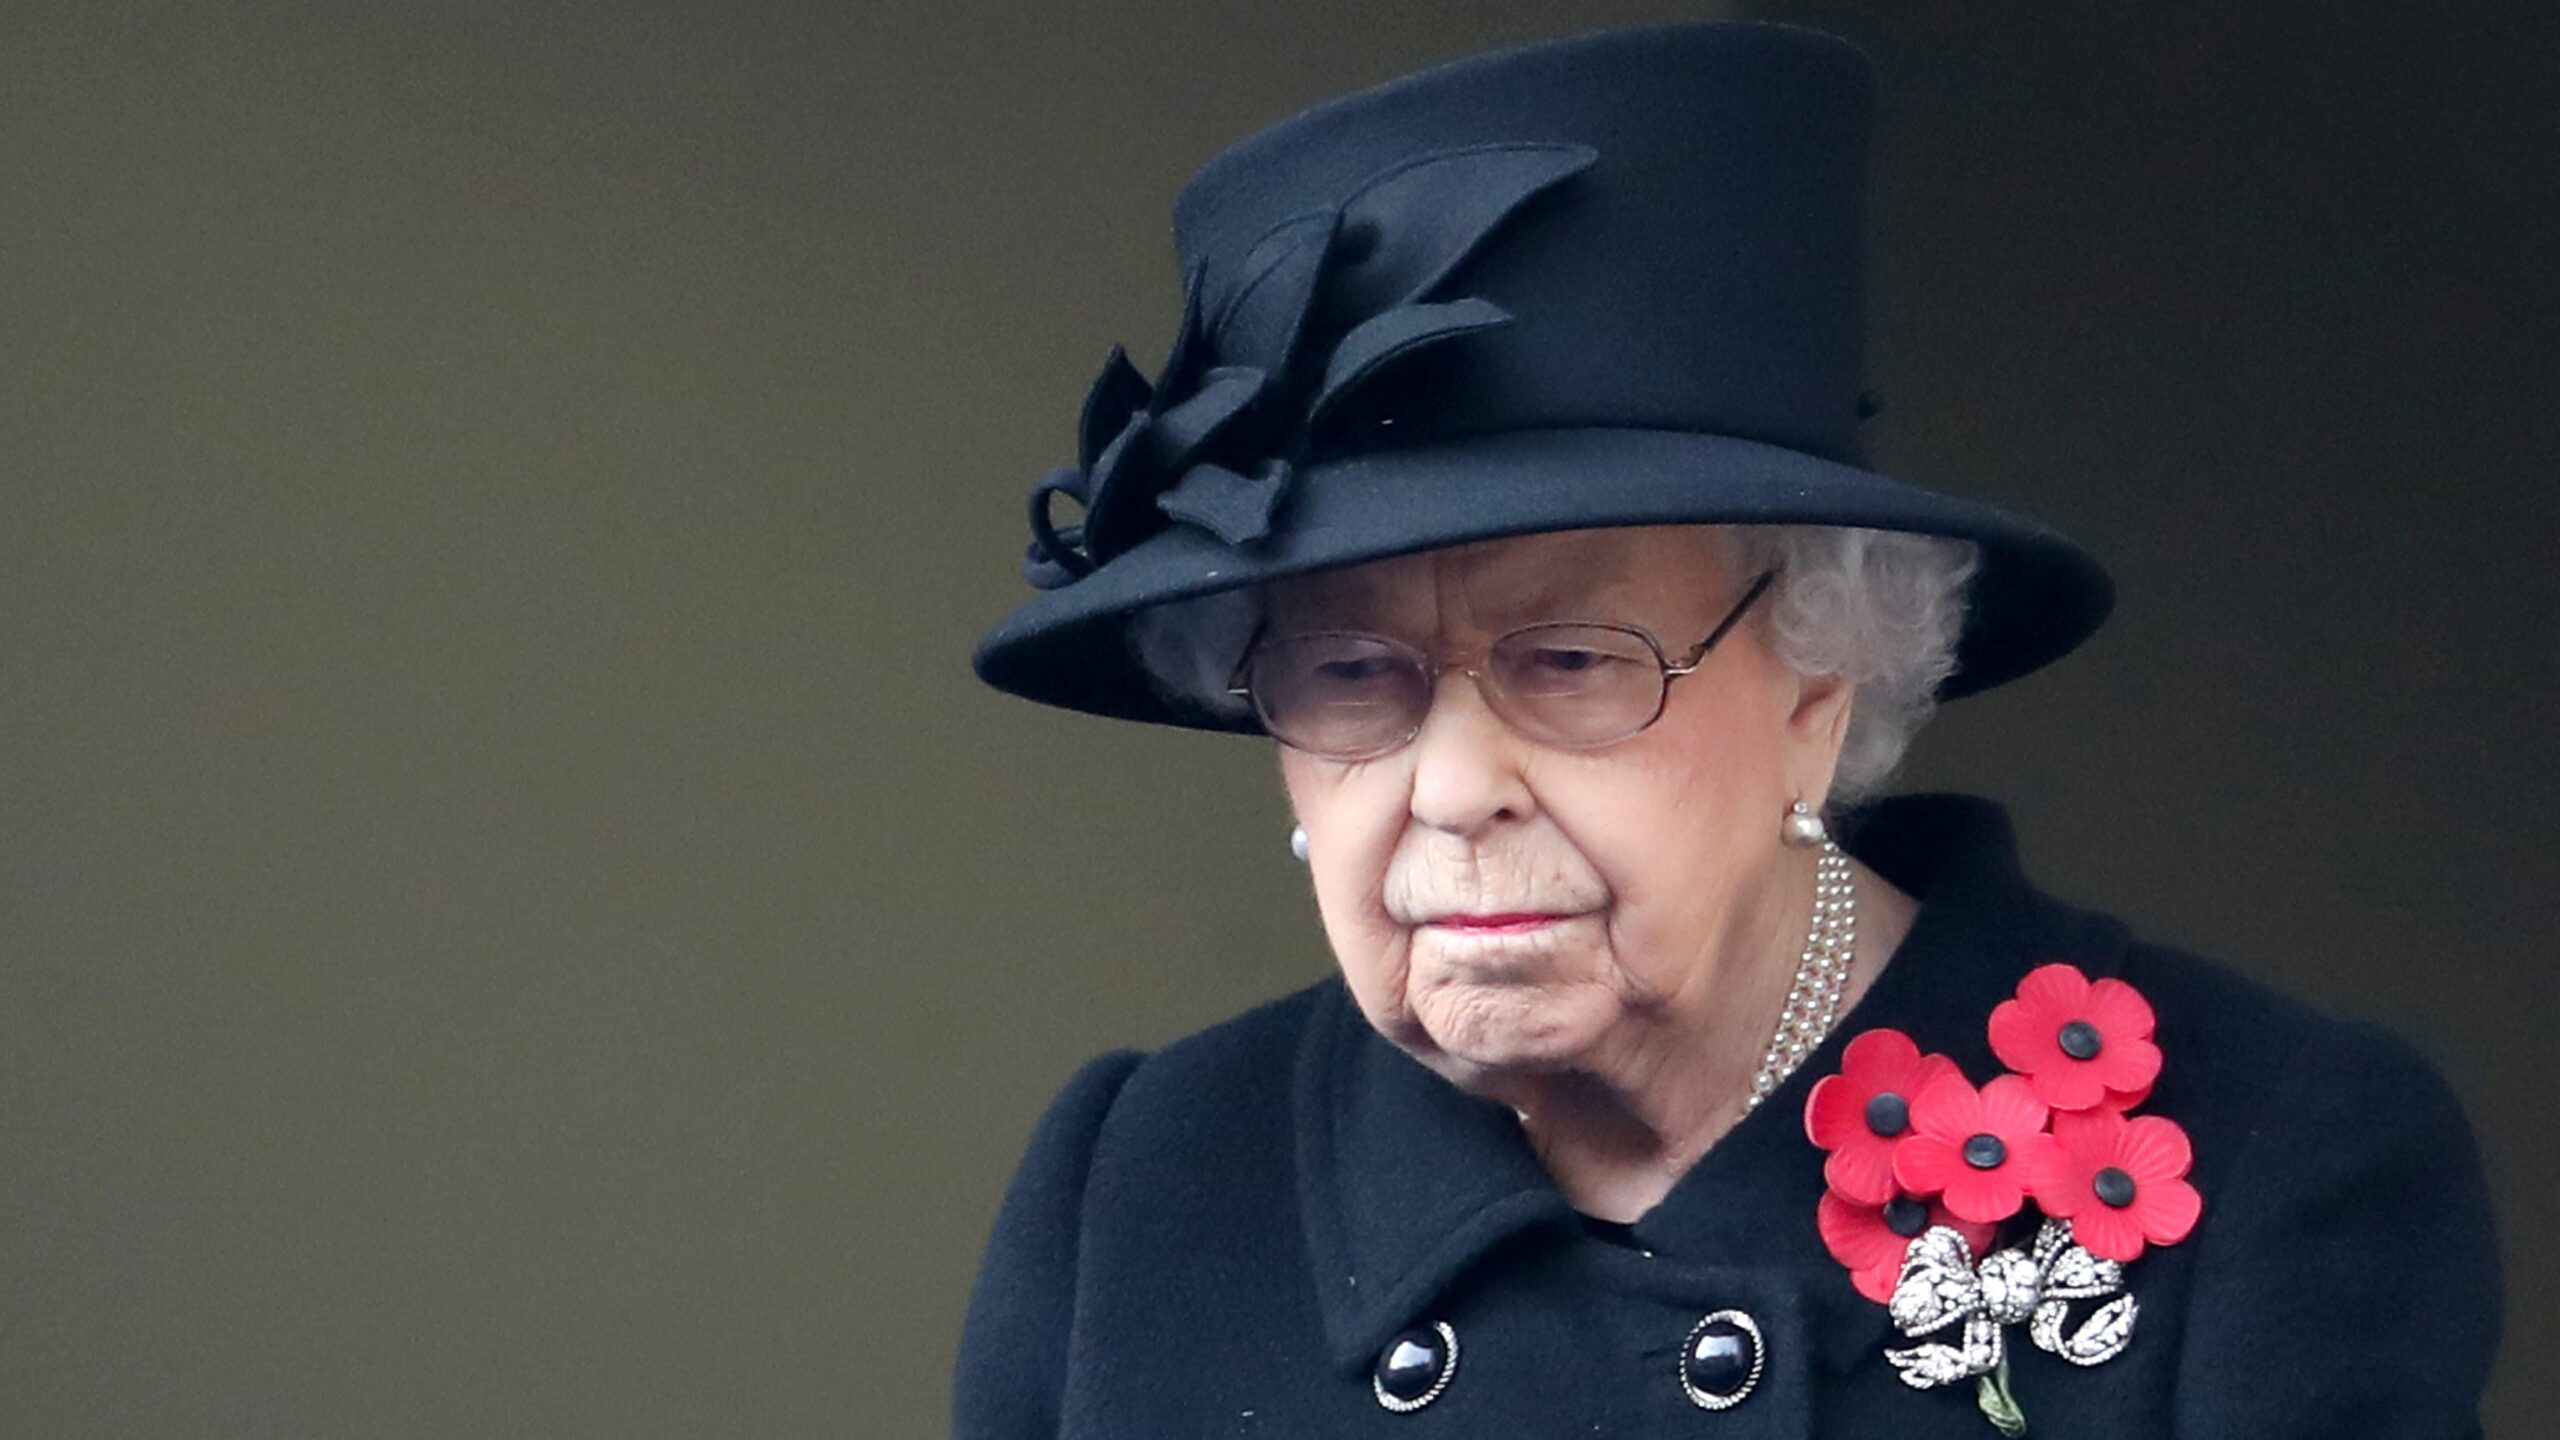 Regina Elisabeta a II-a a Marii Britanii speră să participe la o slujbă religioasă în memoria prinţului Philip